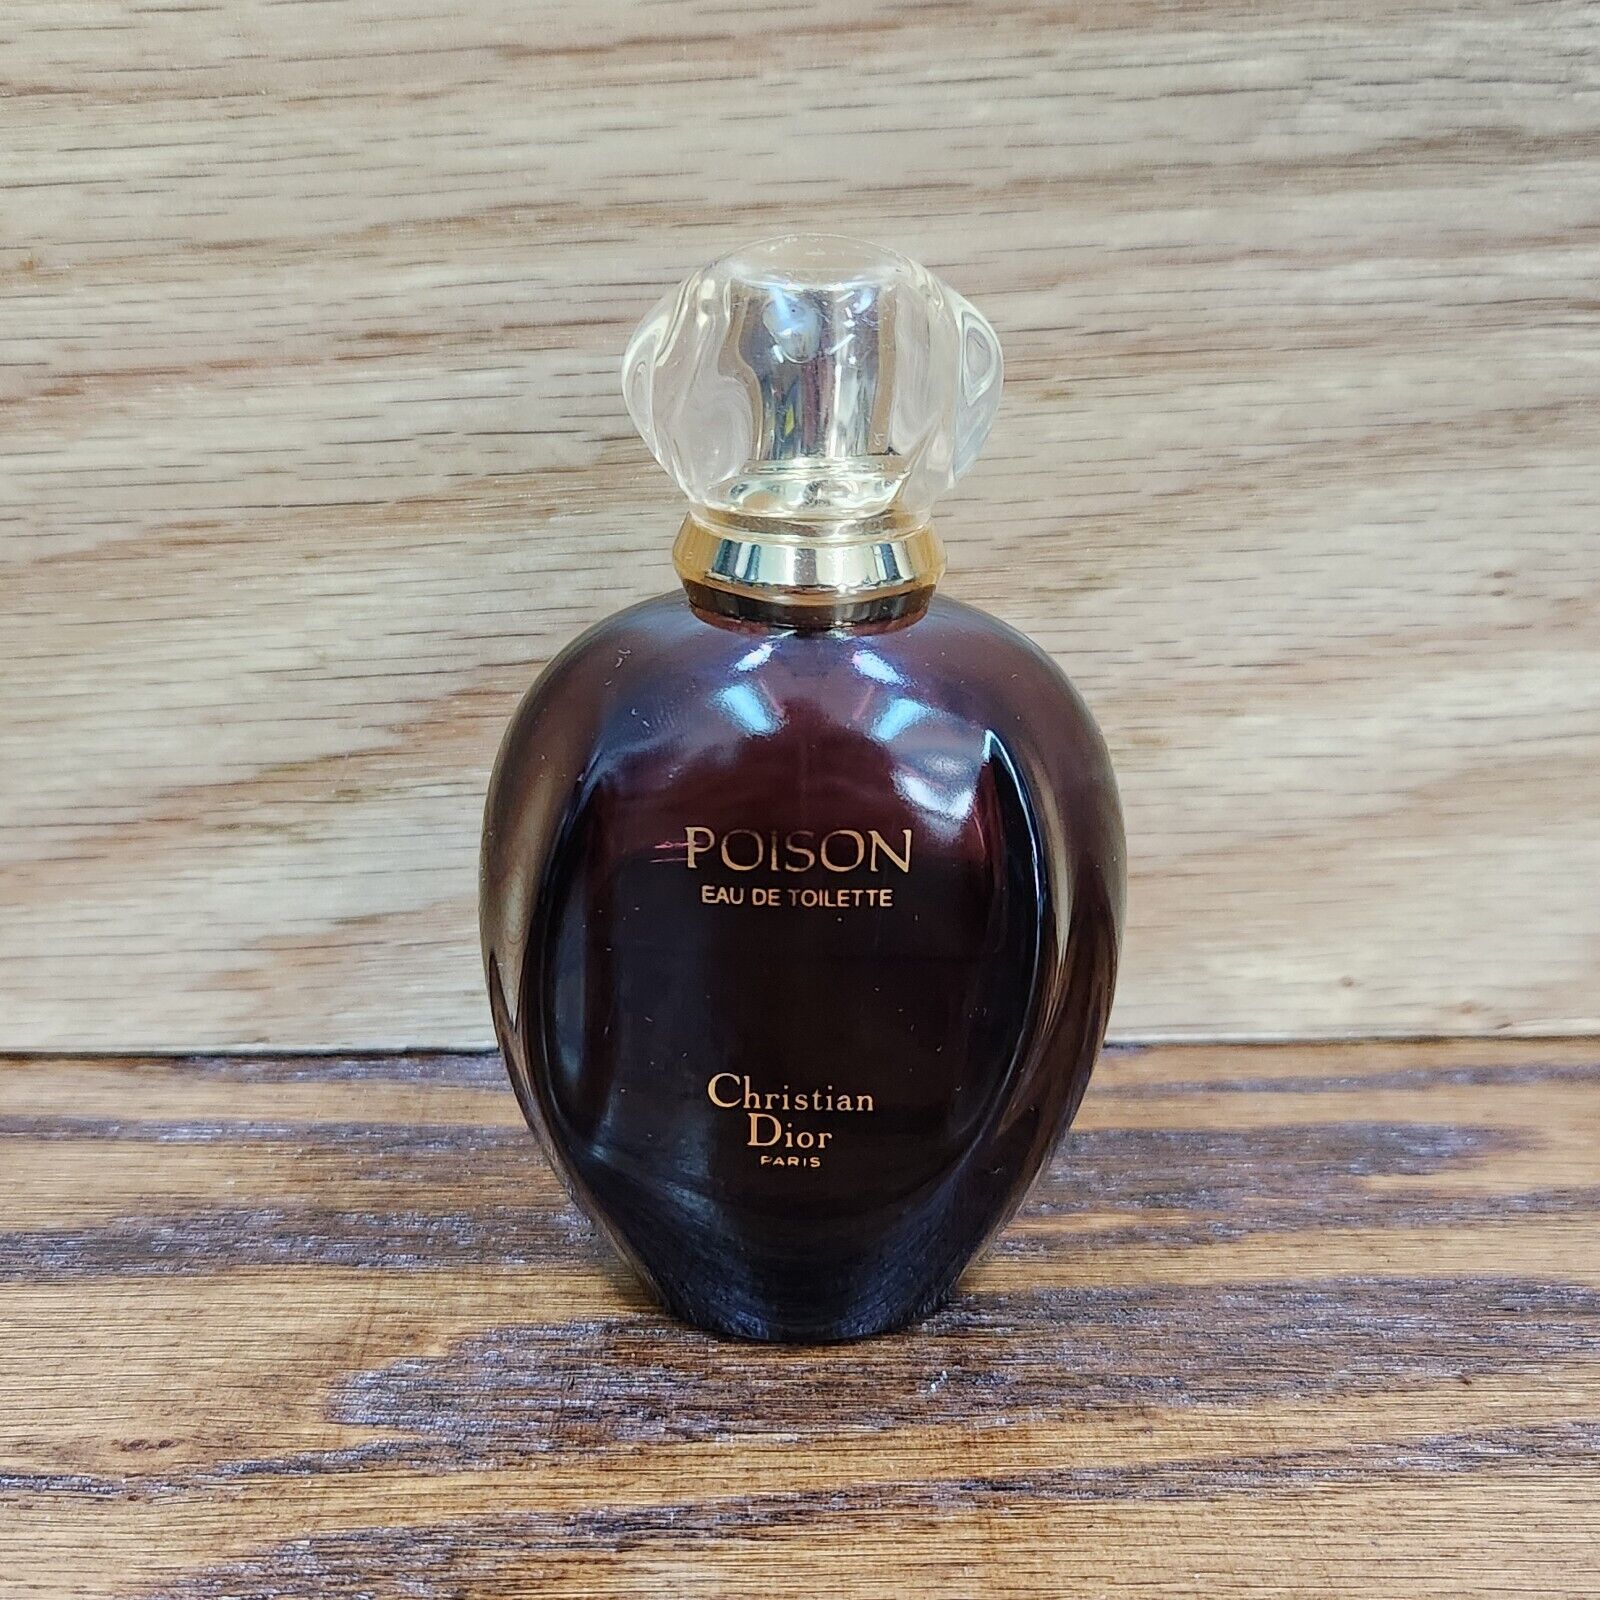 Vintage Christian Dior Poison Eau de Toilette Perfume Spray 1.7 oz Parfum Paris